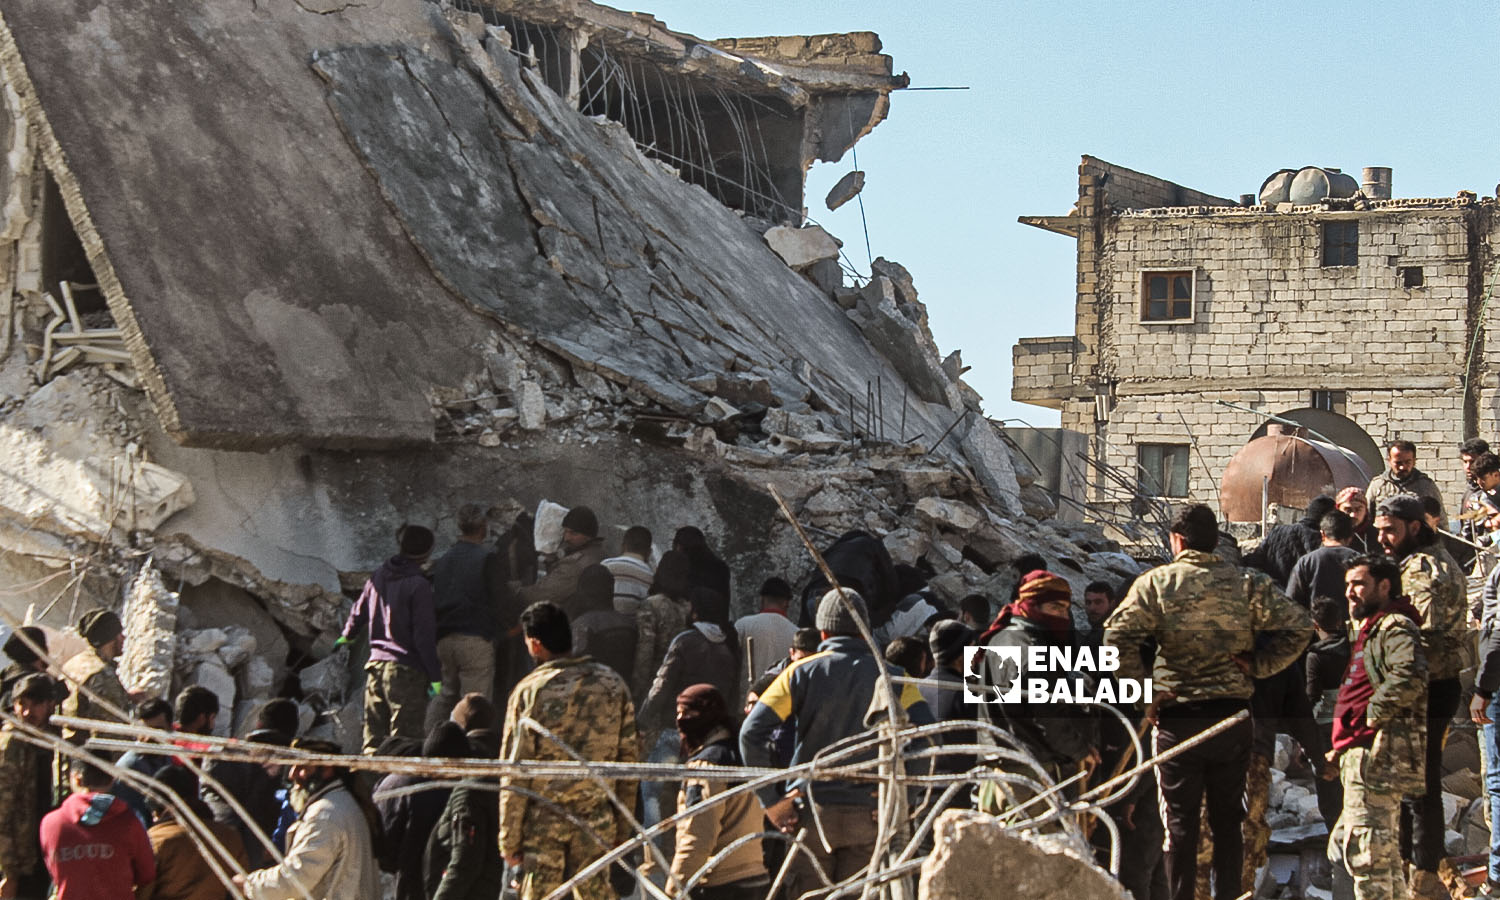 متطوعون من "الدفاع المدني السوري" و سكان متطوعون  يبحثون عن الضحايا والناجين وسط أنقاض المباني المنهارة  في مدينة حارم - 8 شباط 2023 (عنب بلدي/ إياد عبد الجواد)